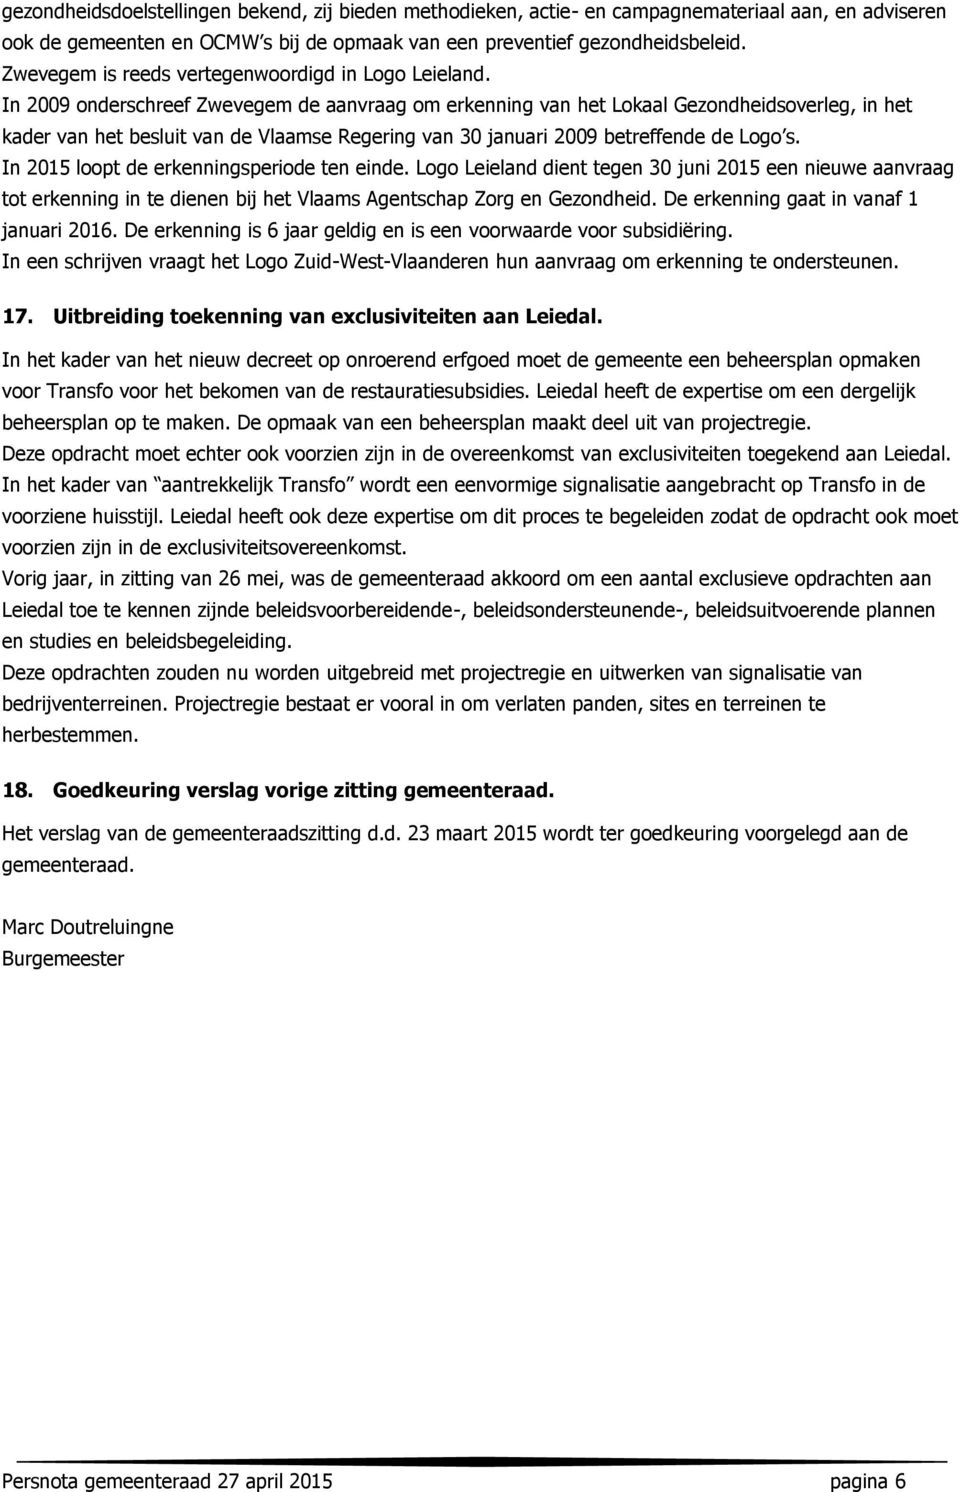 In 2009 onderschreef Zwevegem de aanvraag om erkenning van het Lokaal Gezondheidsoverleg, in het kader van het besluit van de Vlaamse Regering van 30 januari 2009 betreffende de Logo s.